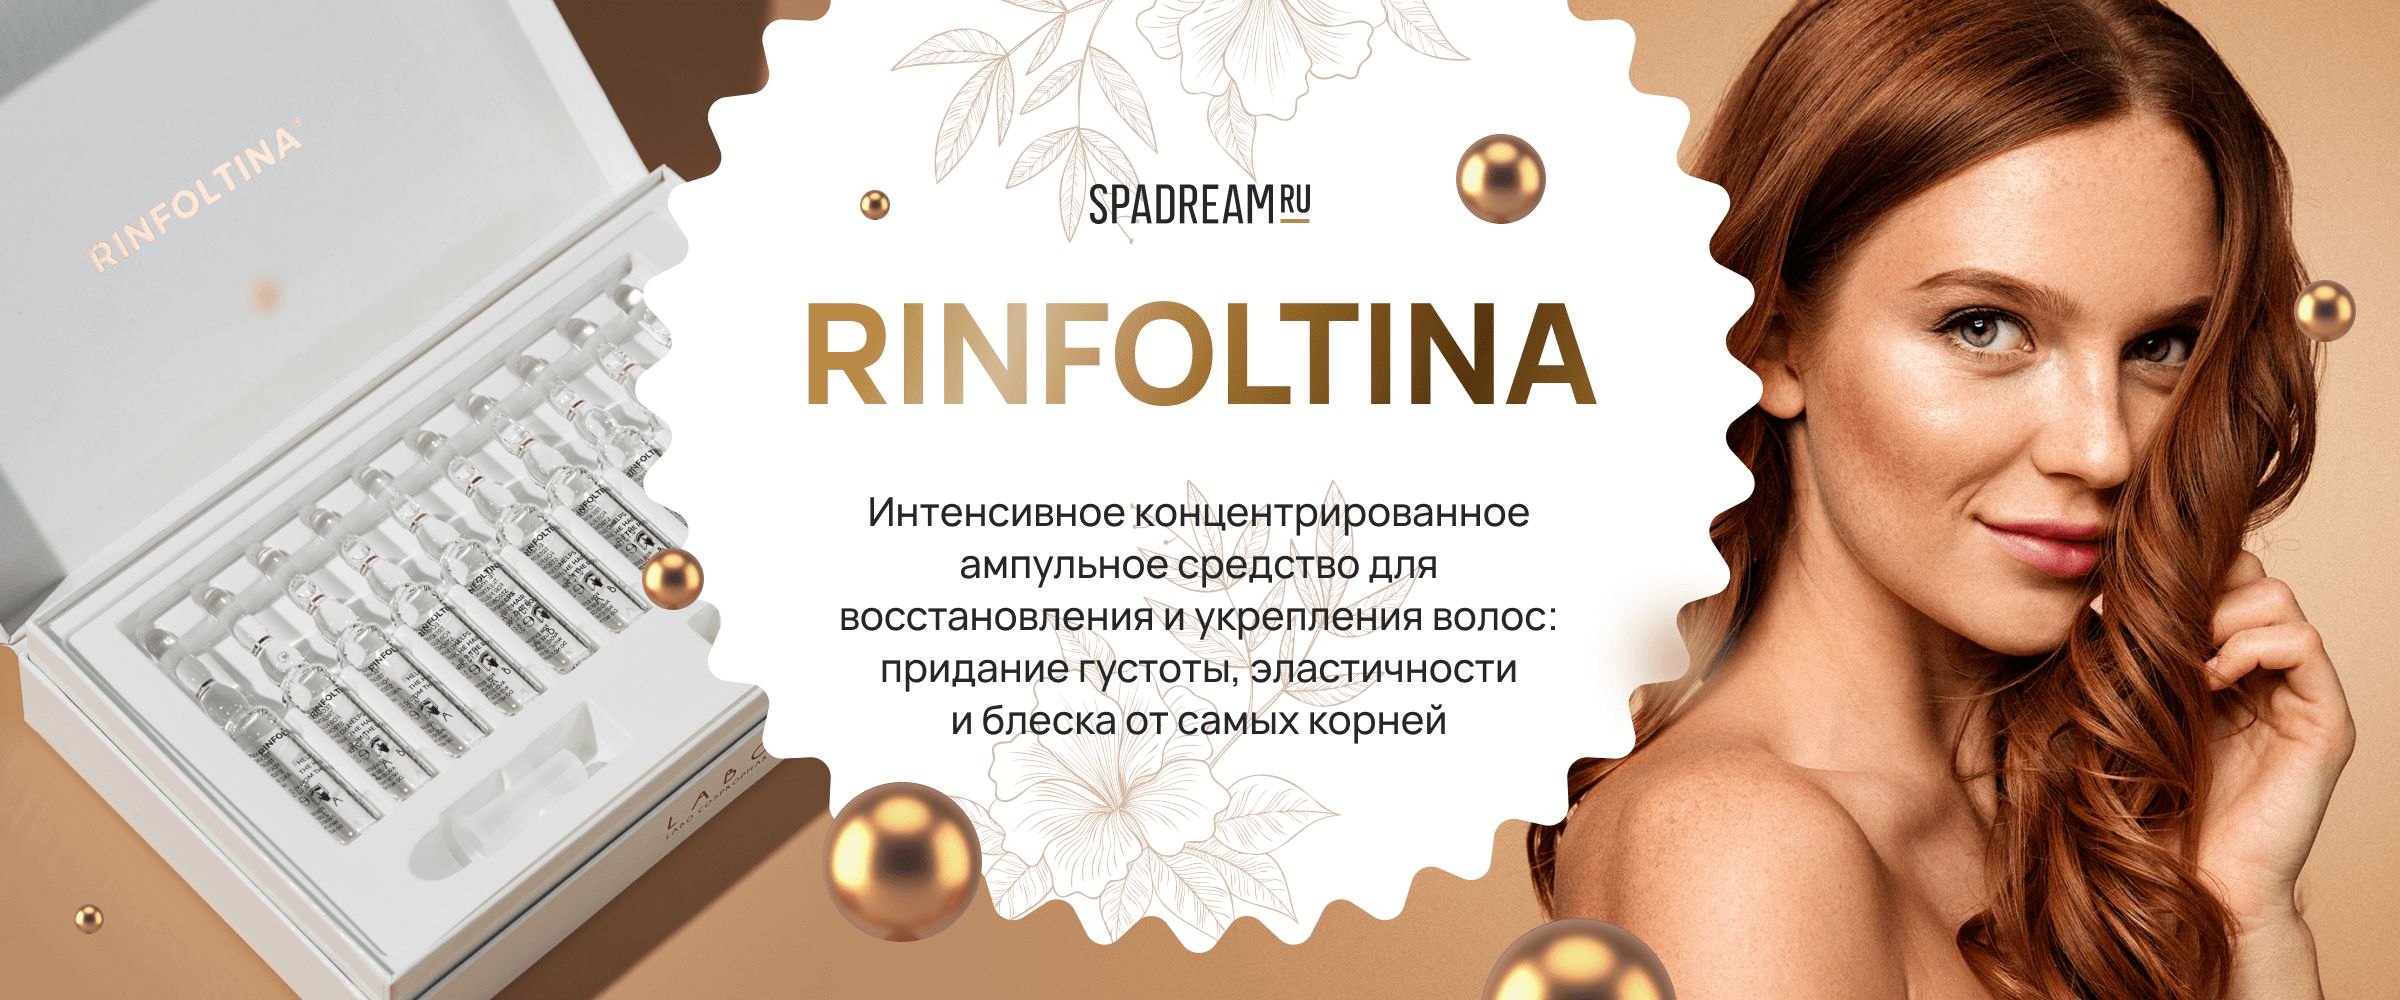 Rinfoltina - интернет-магазин профессиональной косметики Spadream, изображение 45098